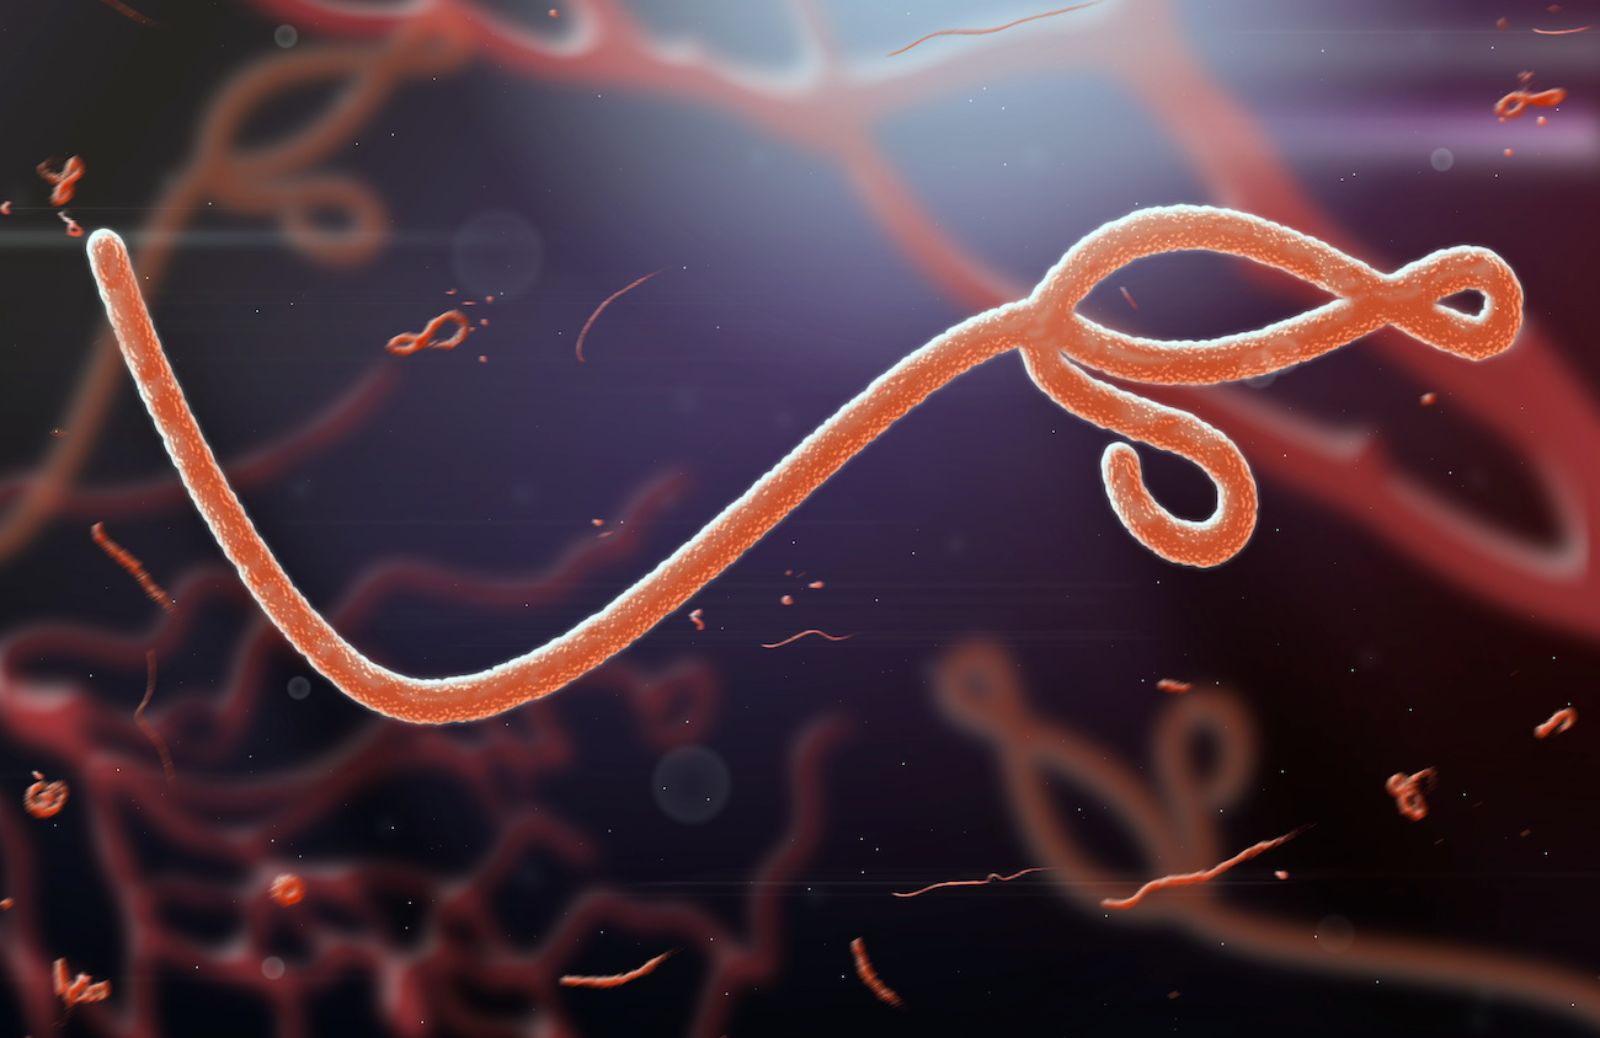 Come riconoscere i sintomi del virus Ebola